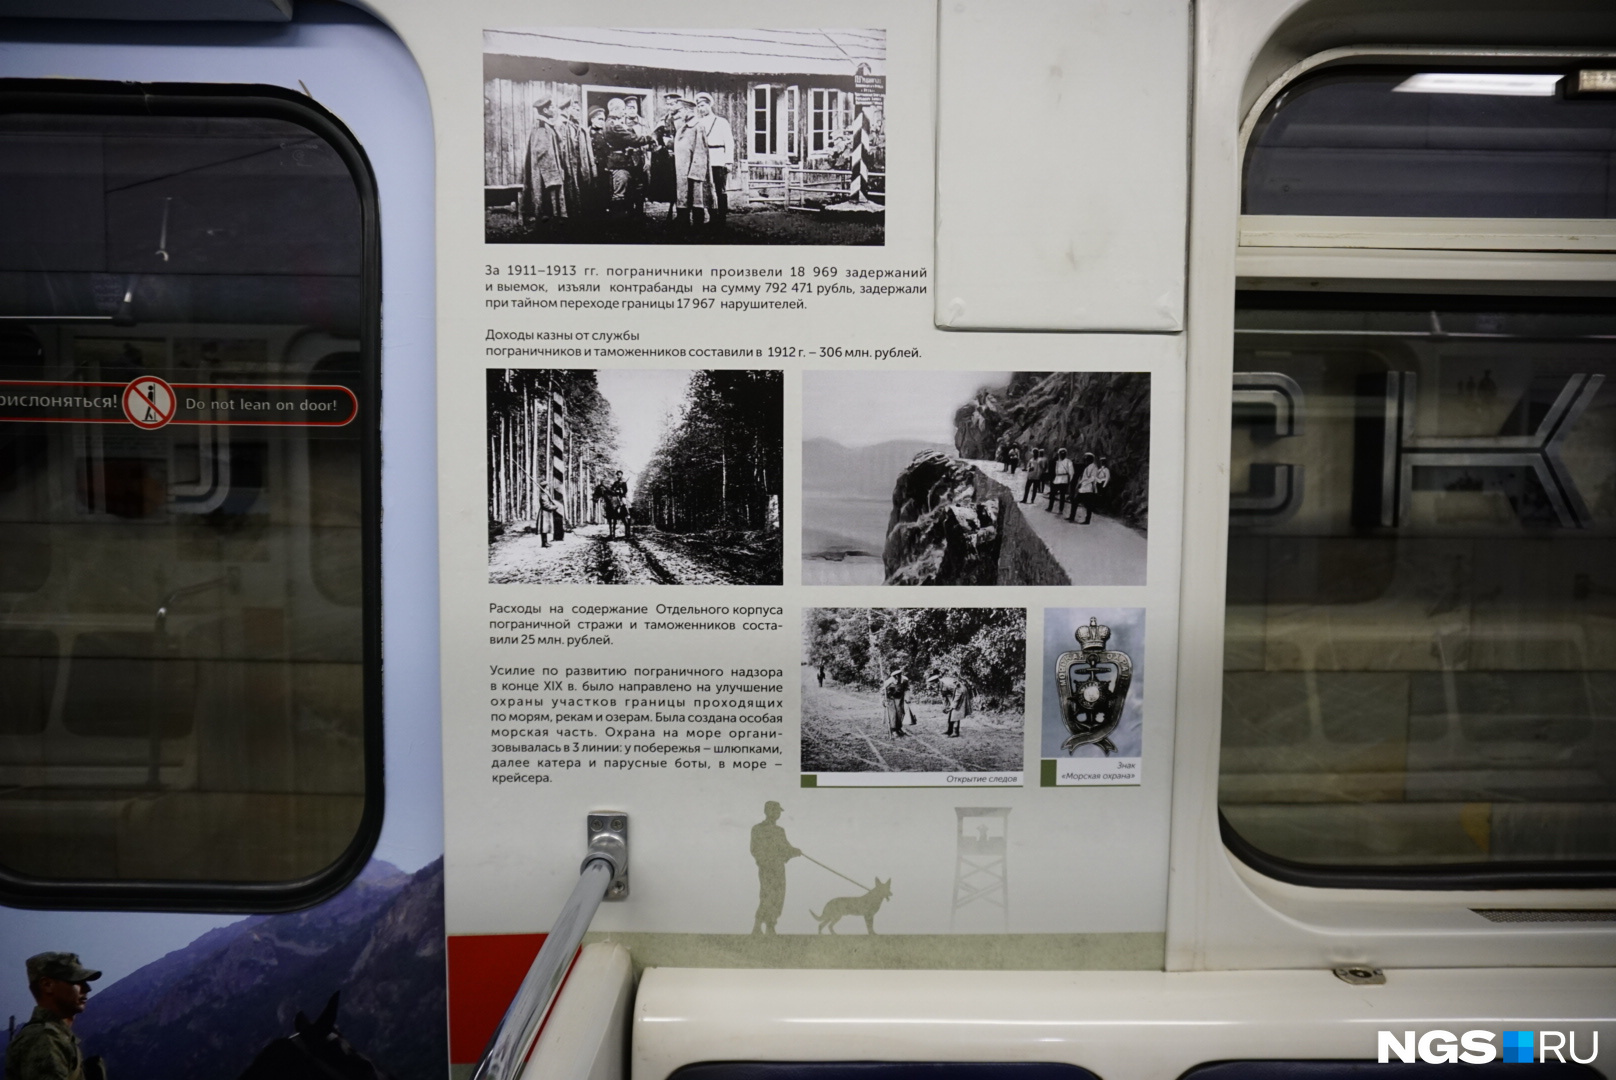 Пассажиры метро могут узнать историю пограничной службы, которая началась ещё в XVI веке